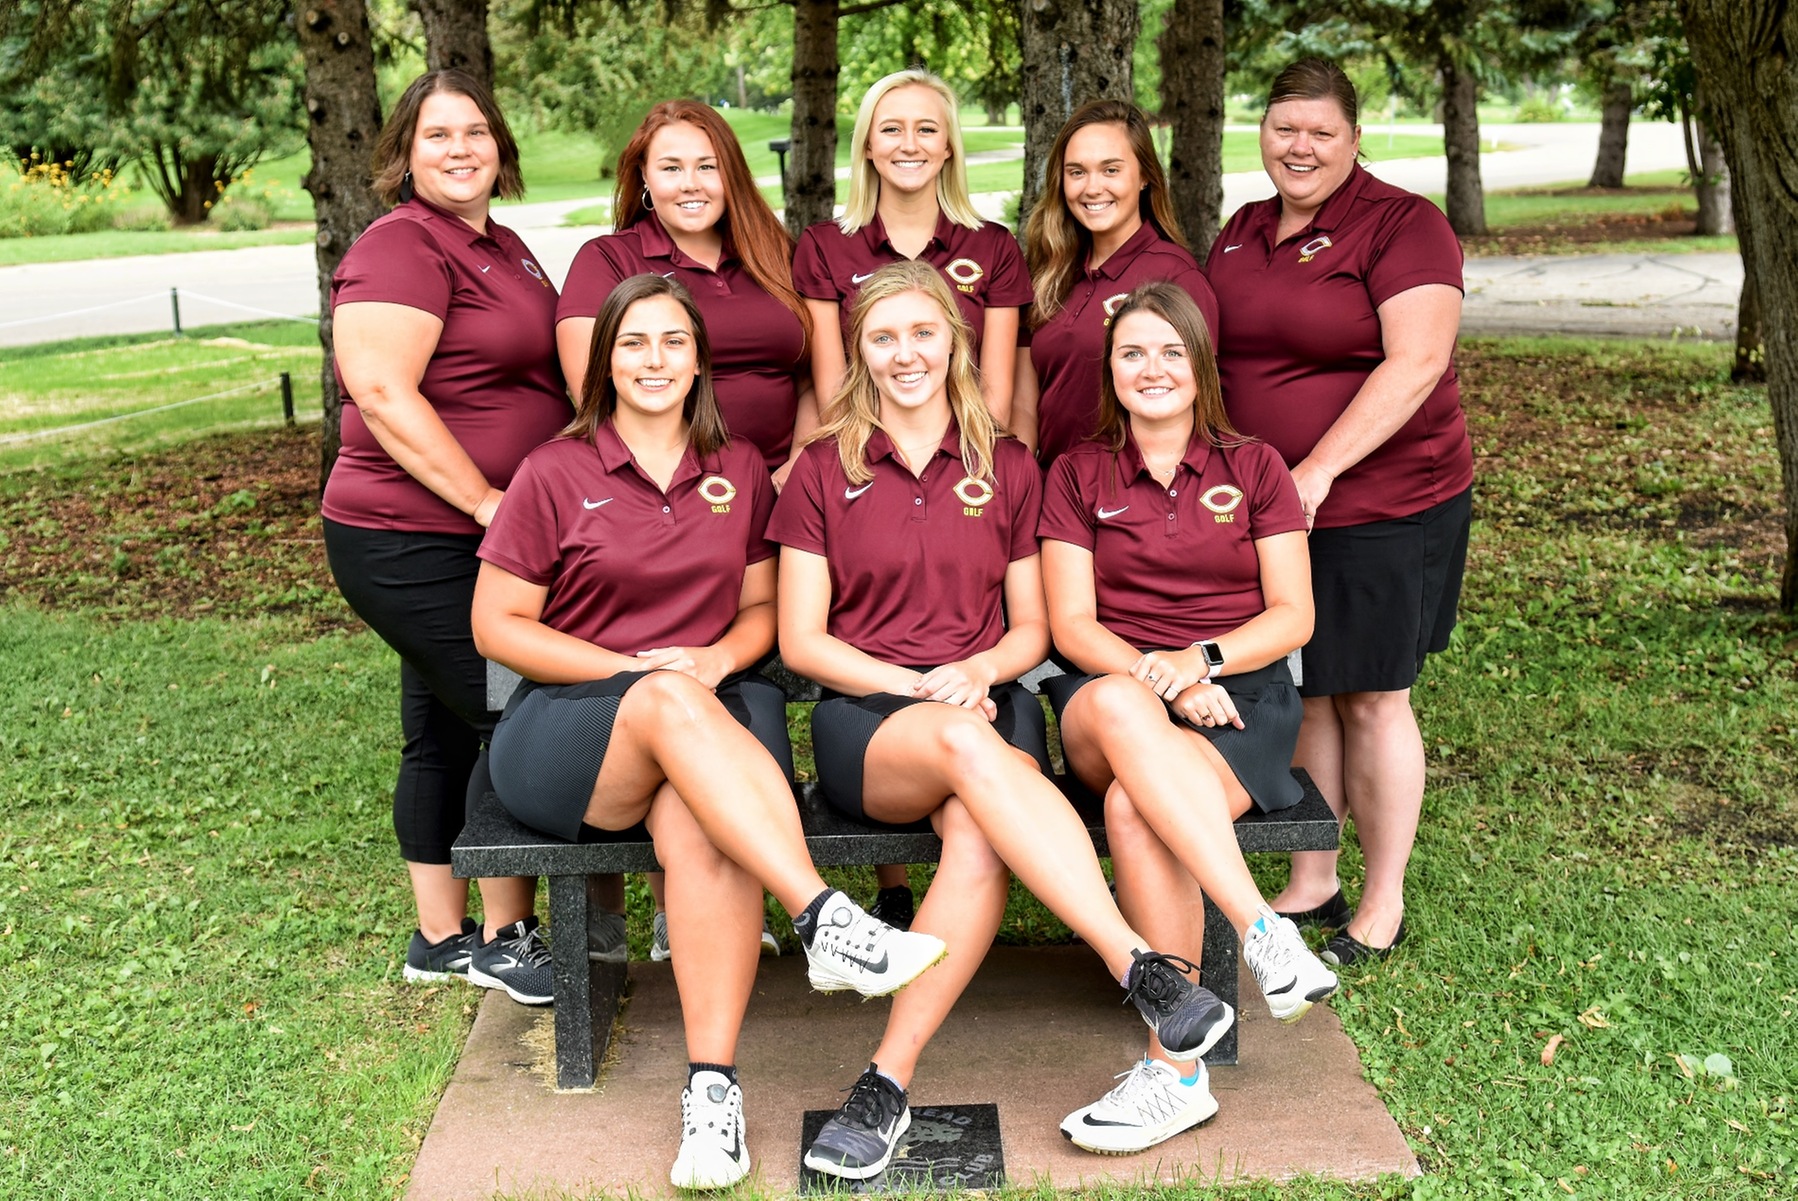 The 2019-20 Cobber women's golf team